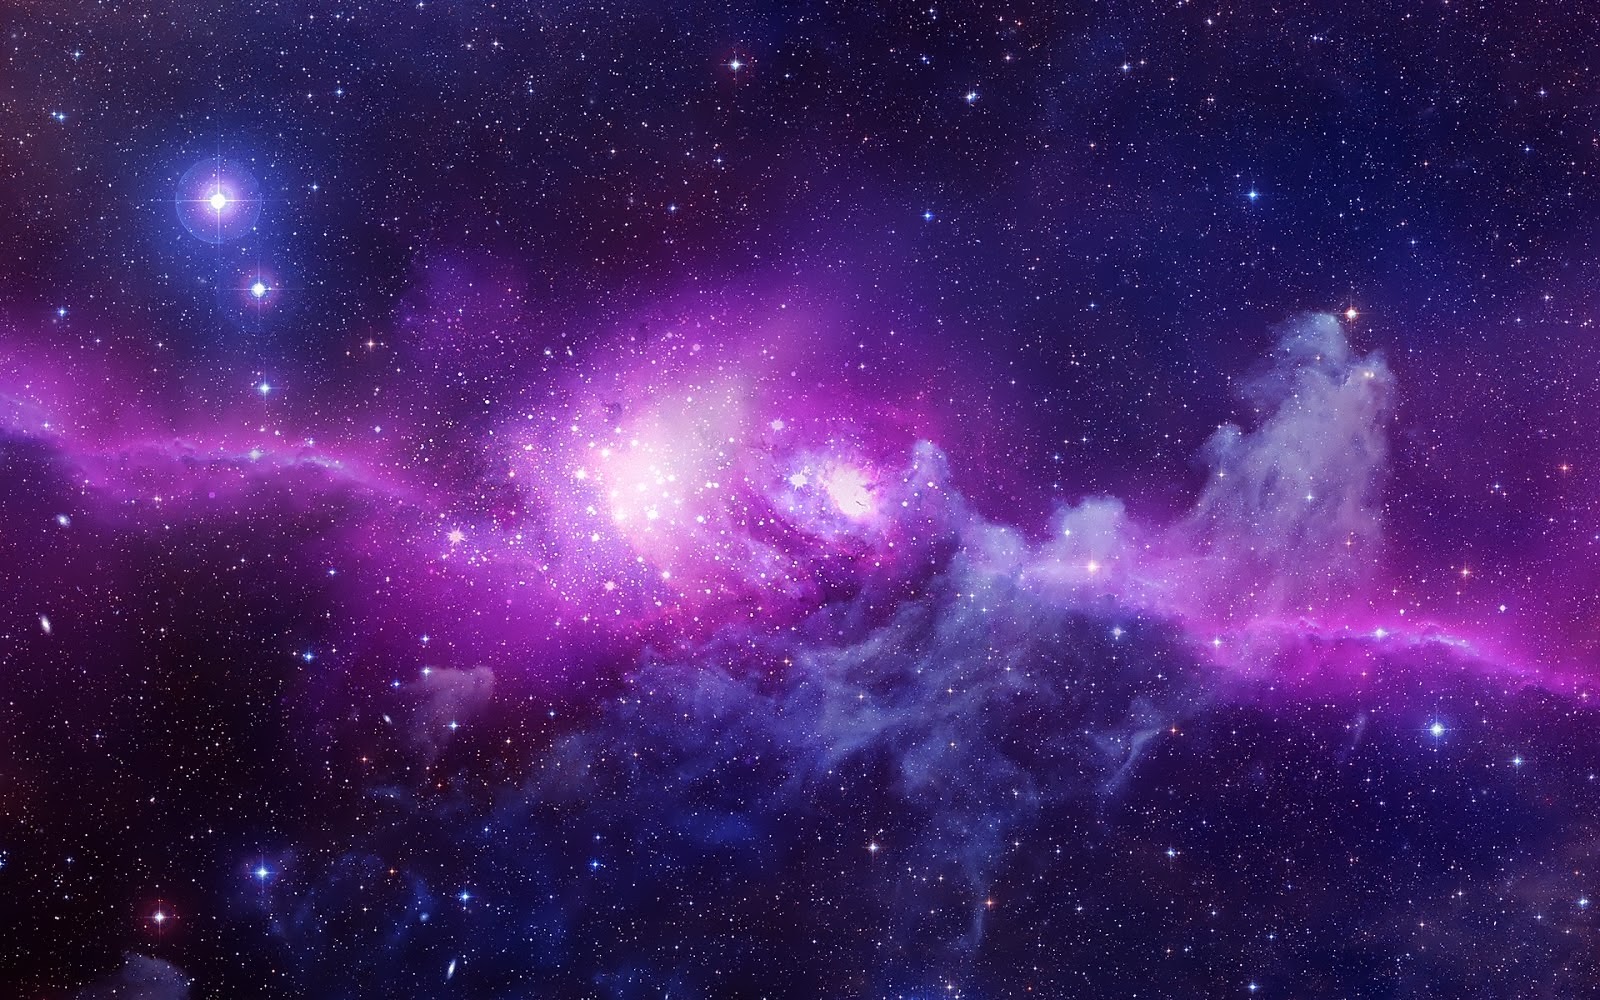 50+ ảnh nền ngân hà độ phân giải cao sẽ khiến bạn say đắm vào không gian vũ trụ vô tận. Khám phá những cảnh tượng đẹp mắt, rực rỡ và đầy mê hoặc của các ngôi sao xa xôi. Bạn sẽ khám phá ra những khoảng trống đẹp nhất của vũ trụ và đắm chìm trong không gian đầy kỳ diệu.